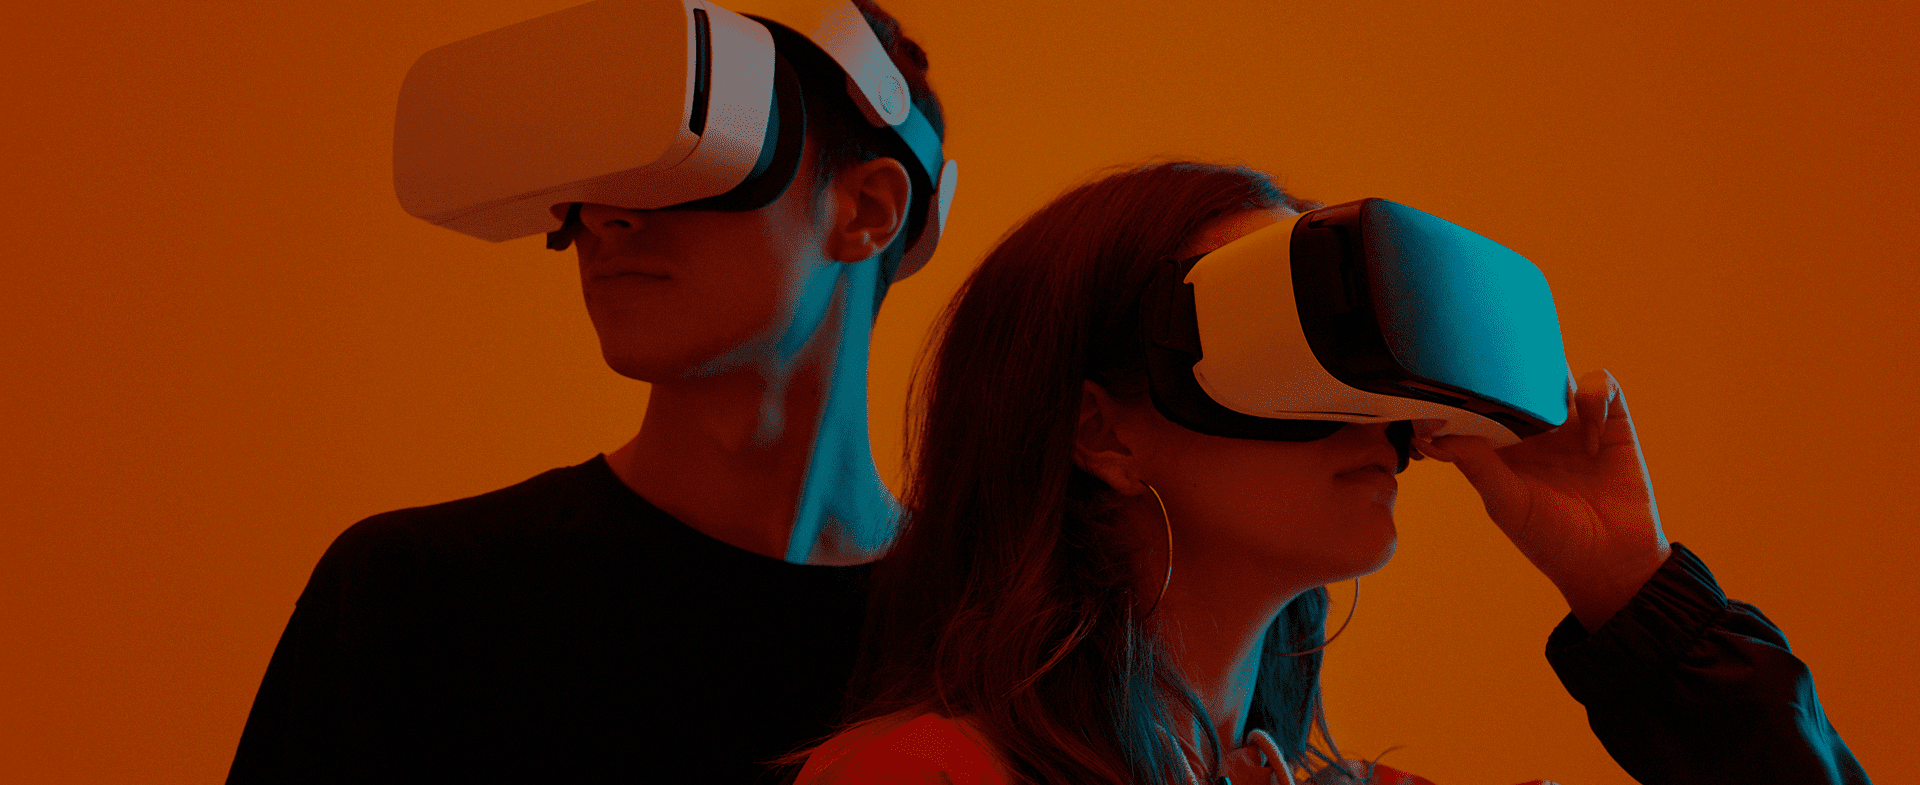 Jovens com óculos de realidade virtual, representando o futuro do trabalho.